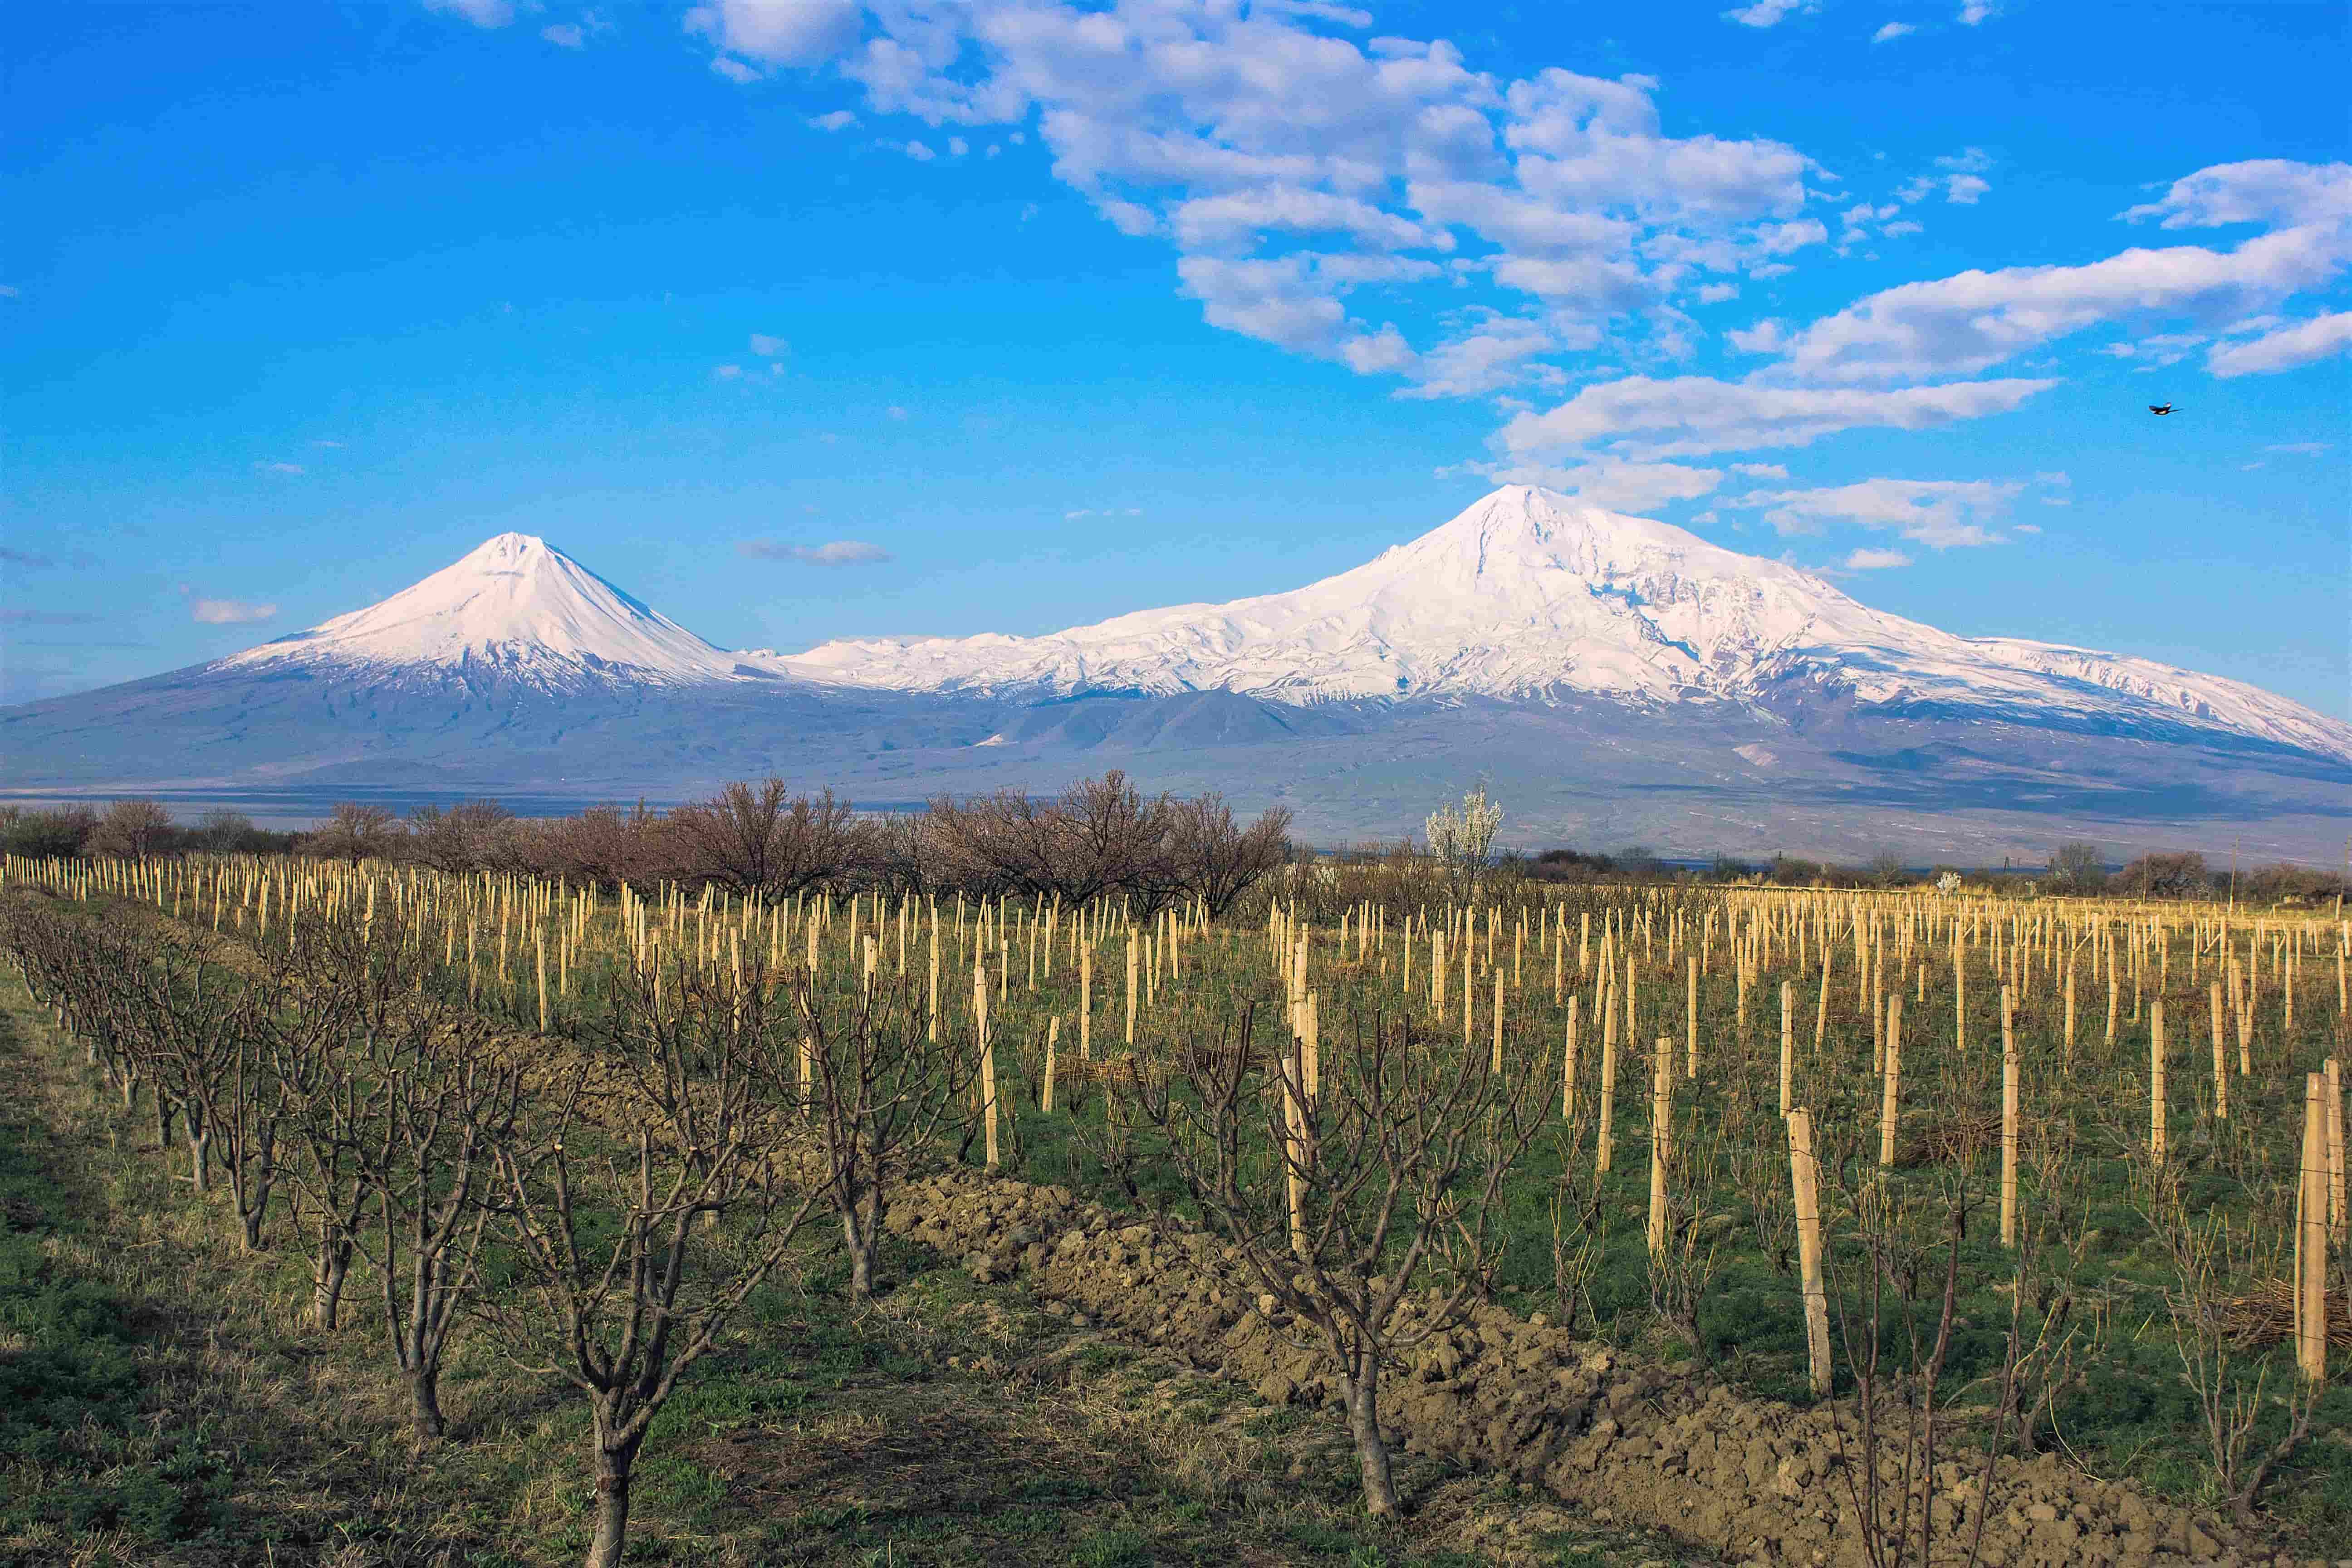 På en reise til Armenia ser du helt sikkert Mount Ararat